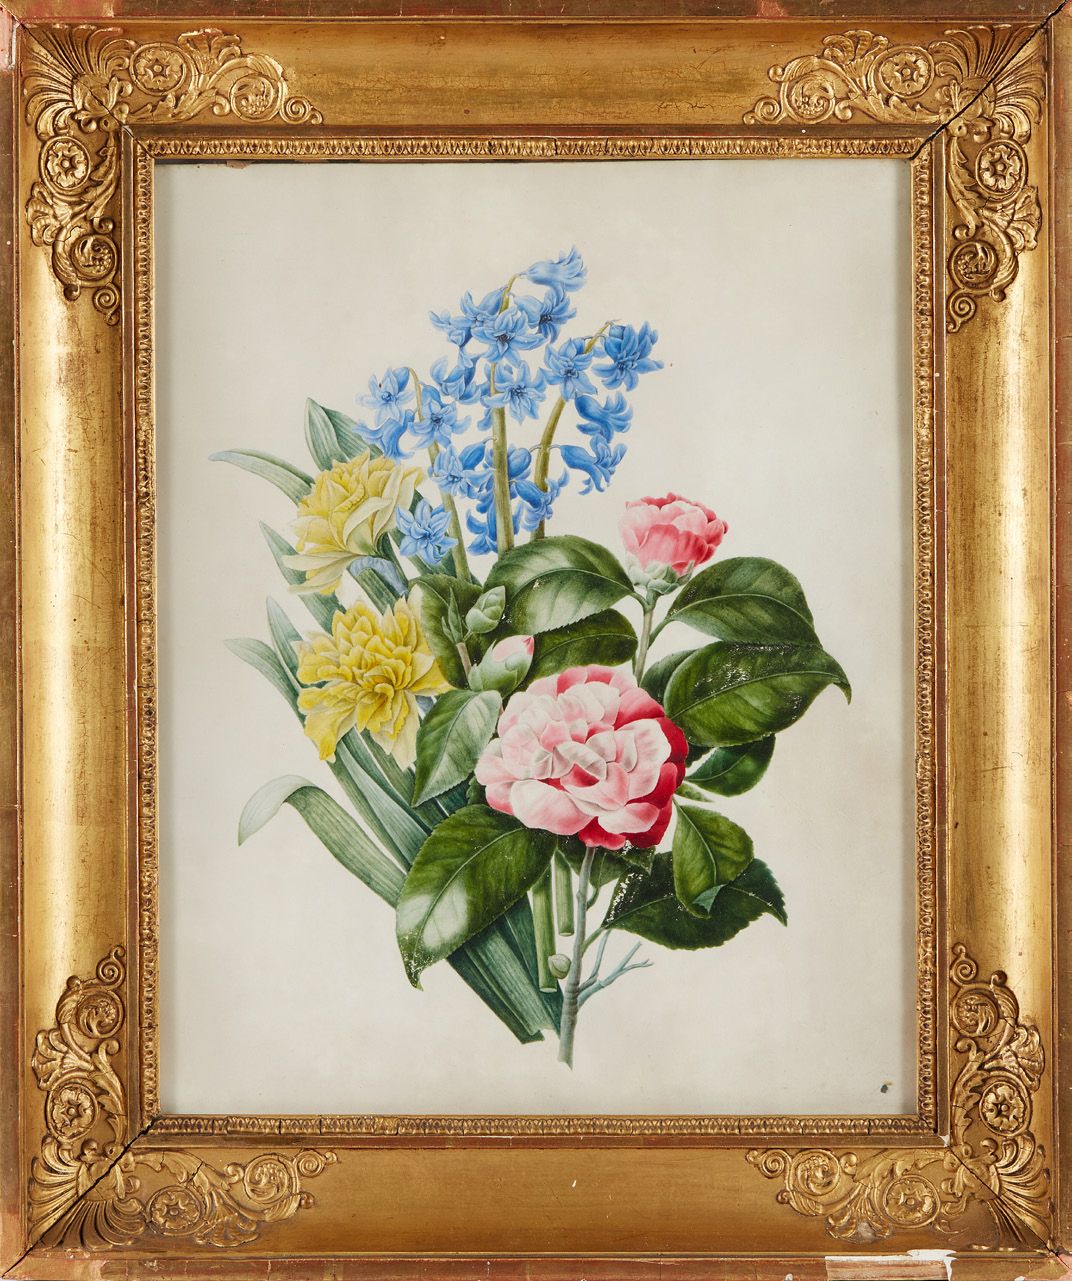 Ecole FRANCAISE vers 1860, suiveur de Pierre-Joseph REDOUTE Bouquets of flowers
&hellip;